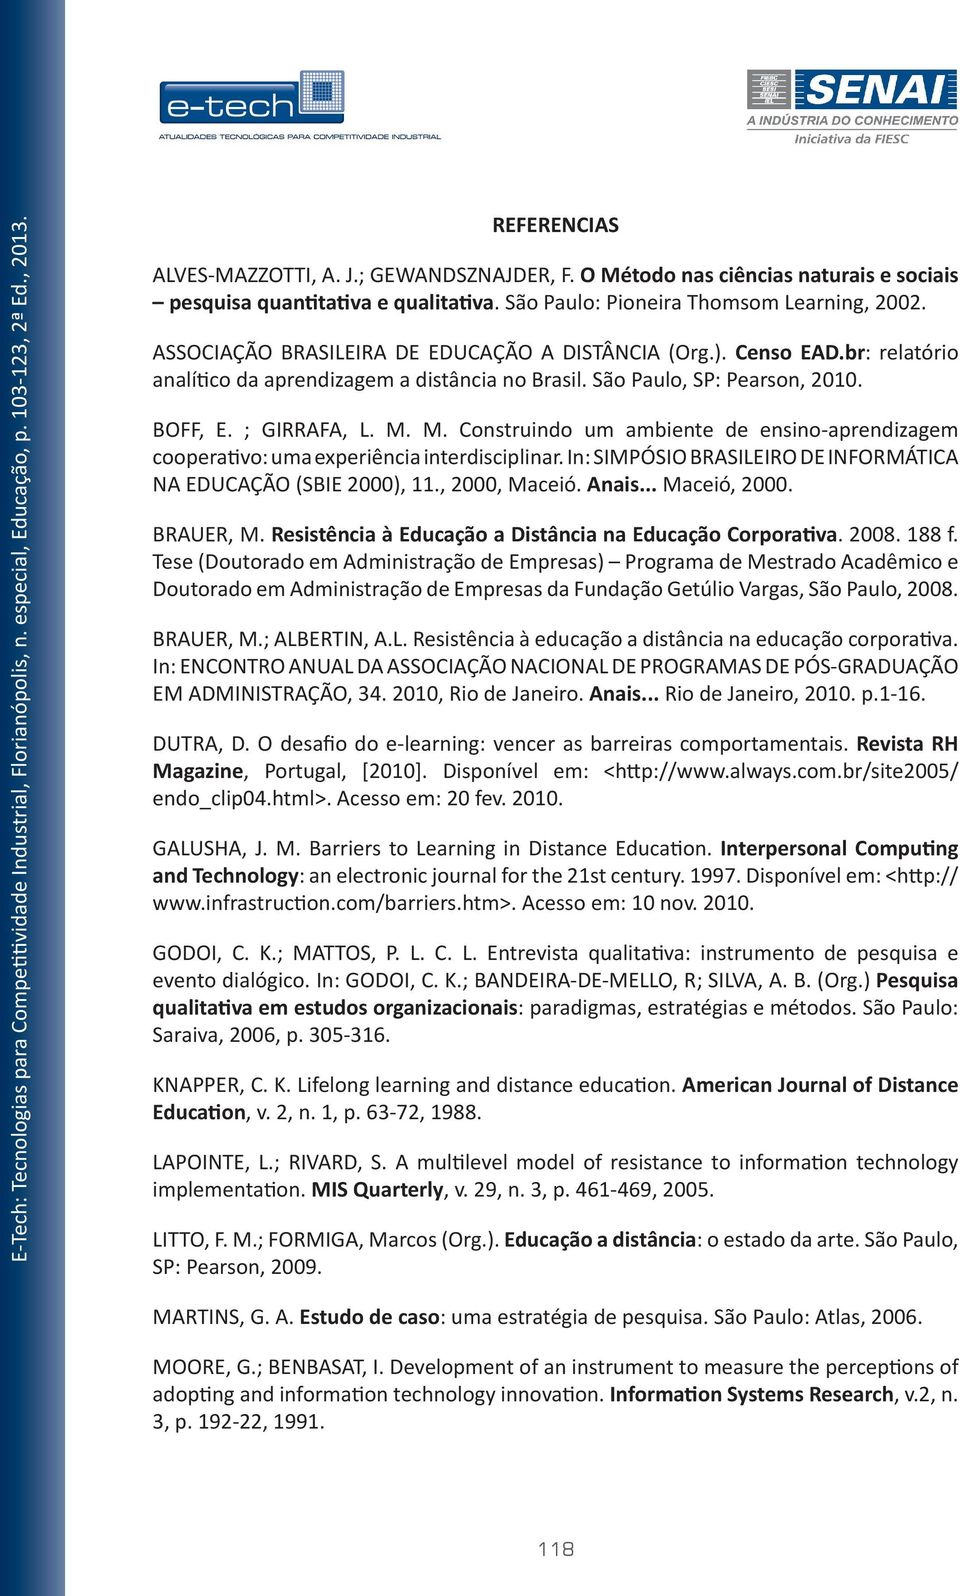 M. Construindo um ambiente de ensino-aprendizagem cooperativo: uma experiência interdisciplinar. In: SIMPÓSIO BRASILEIRO DE INFORMÁTICA NA EDUCAÇÃO (SBIE 2000), 11., 2000, Maceió. Anais... Maceió, 2000.